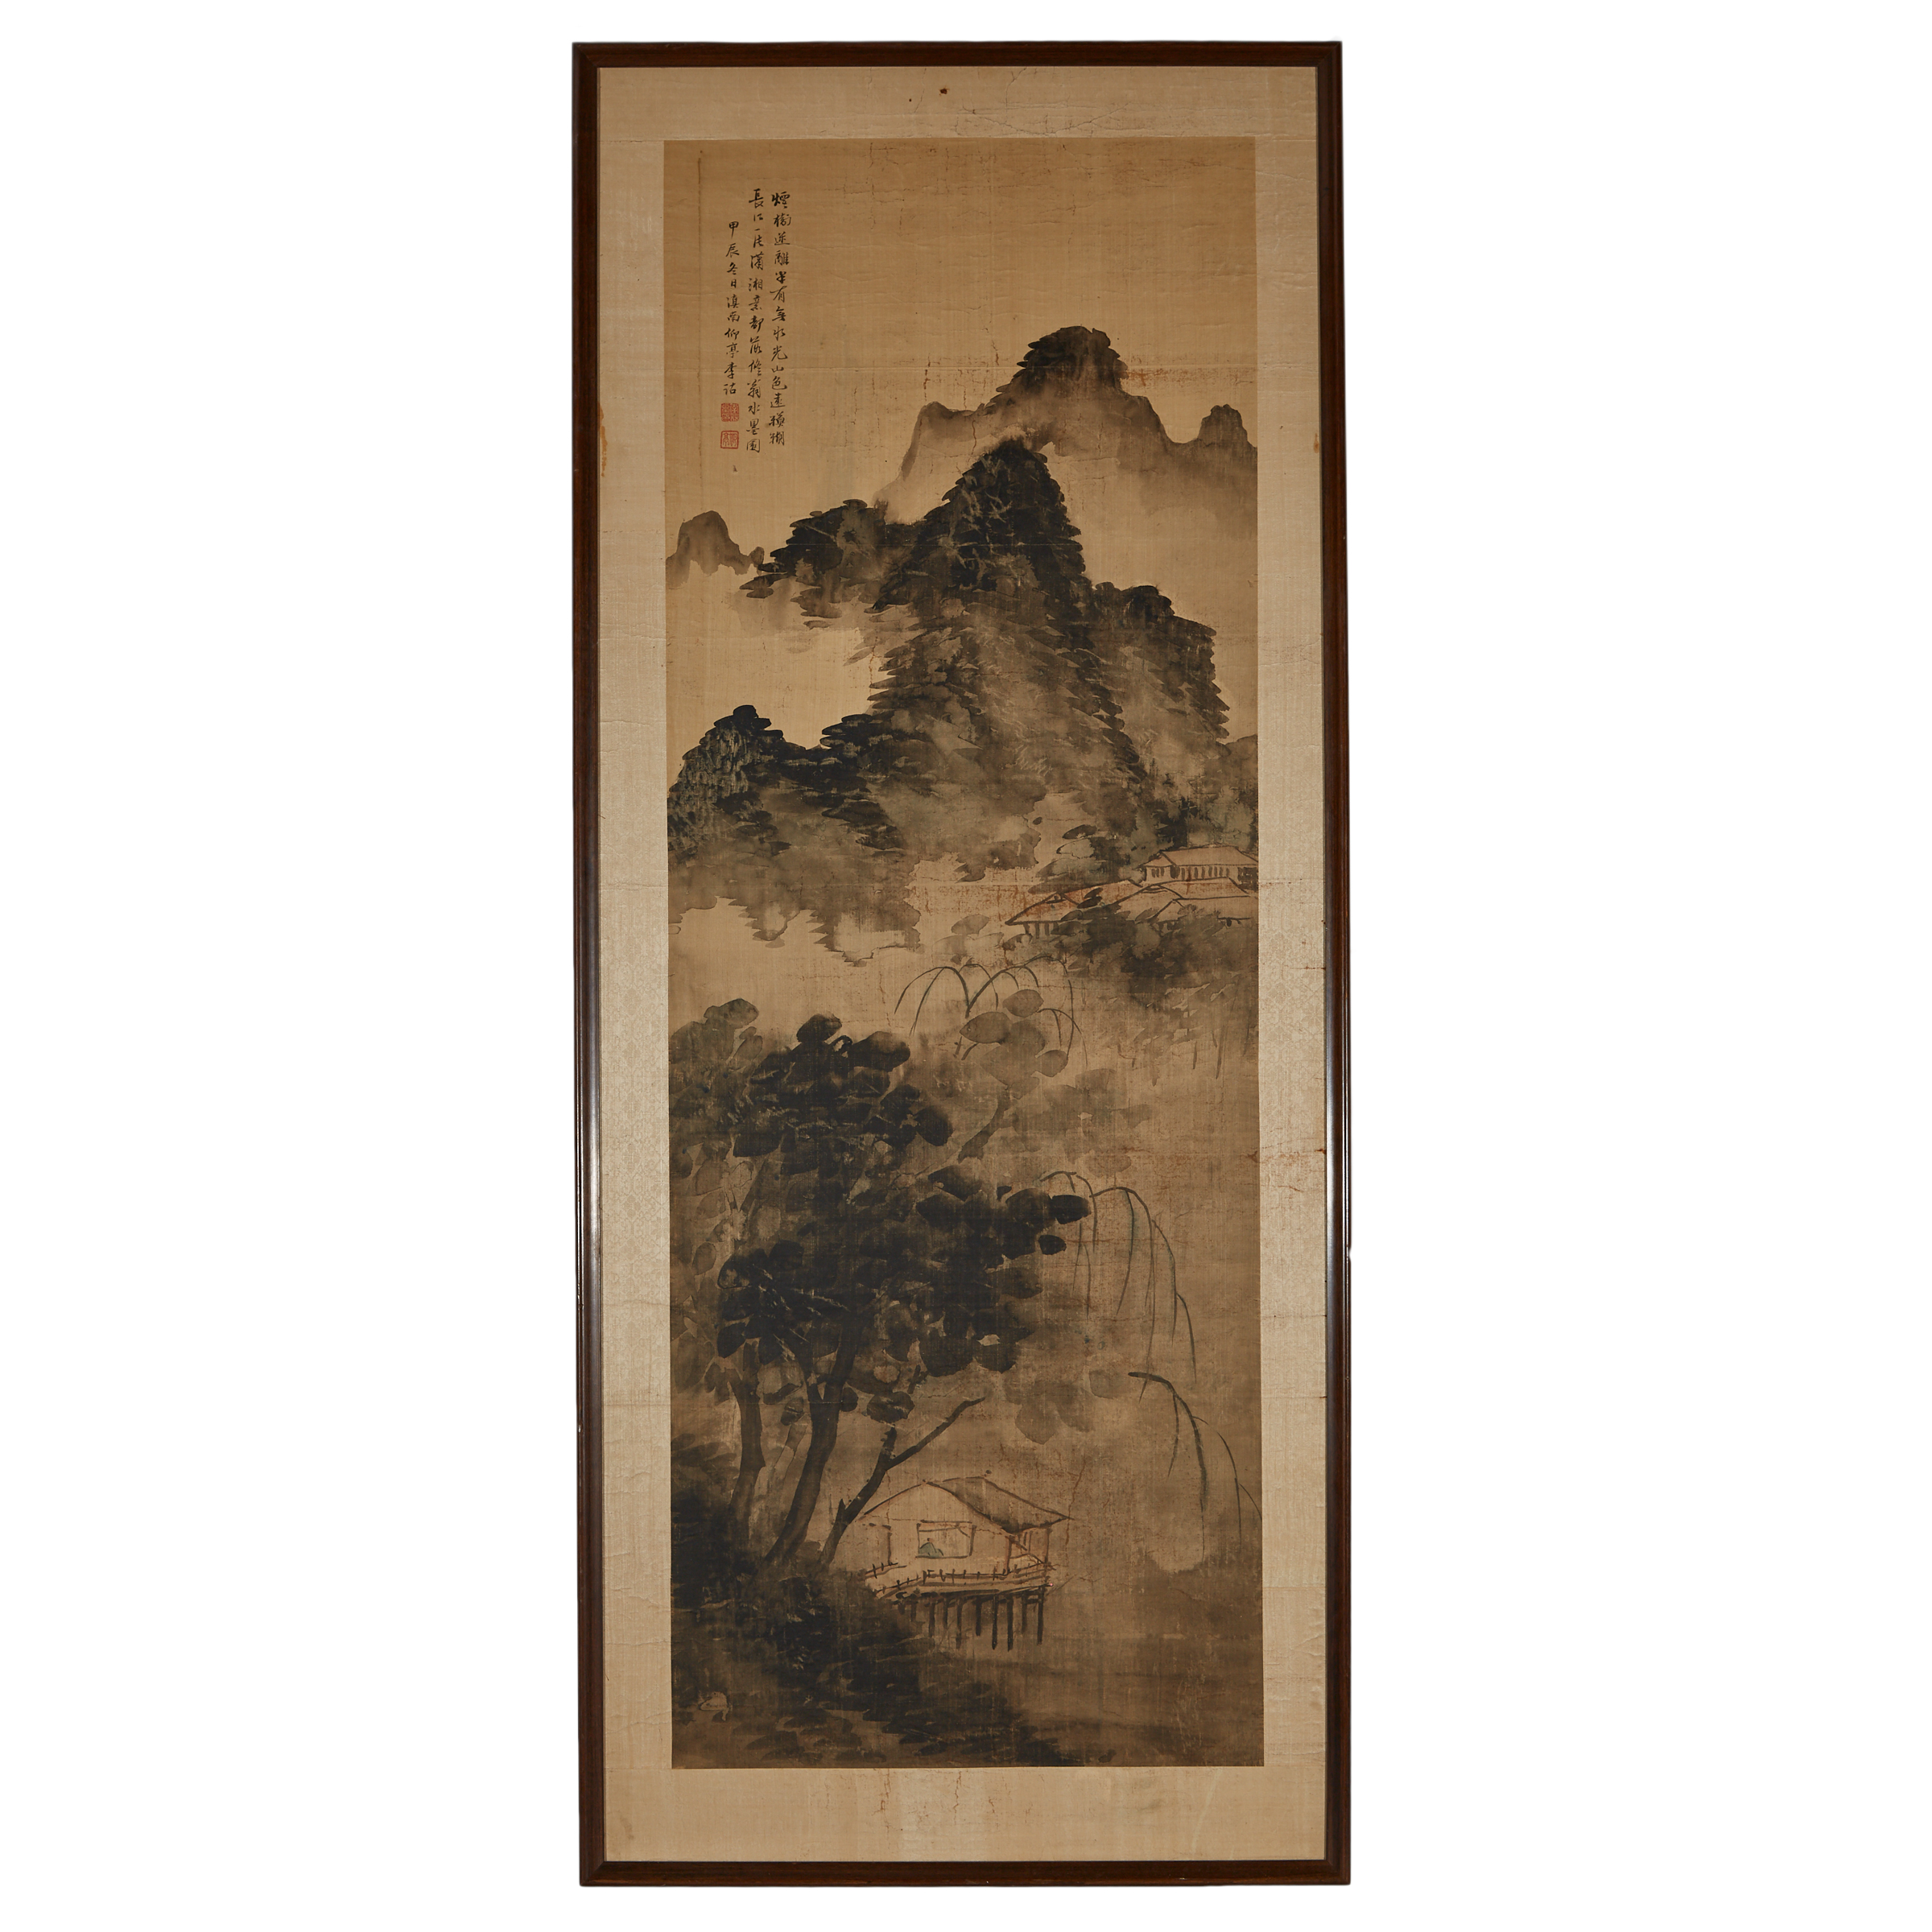 Li Gu (Qing Dynasty), Landscape